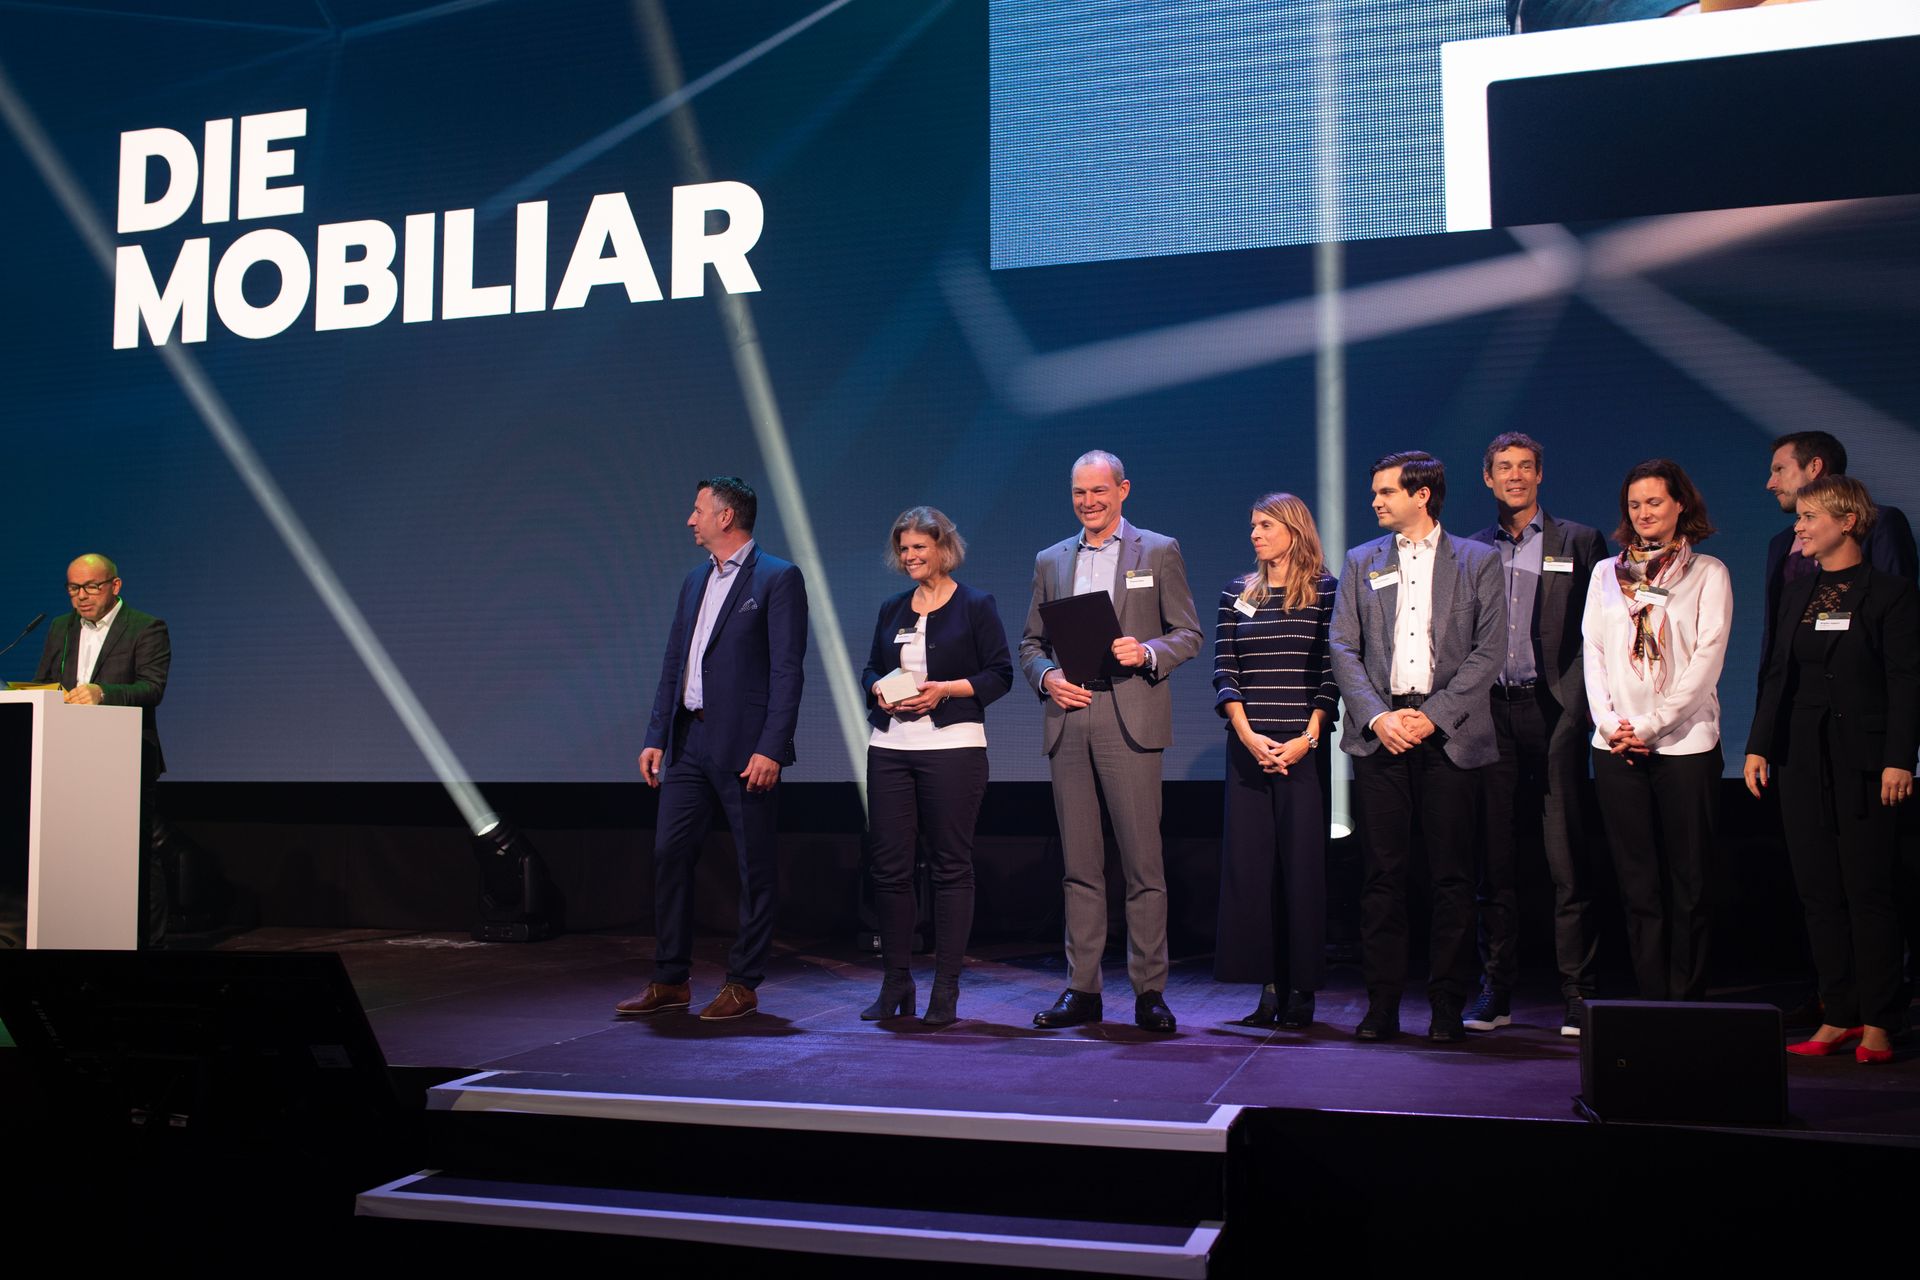 La empresa "La Mobiliare" fue galardonada con el premio "Digital Excellence PMI" en el Swiss "Digital Economy Award"